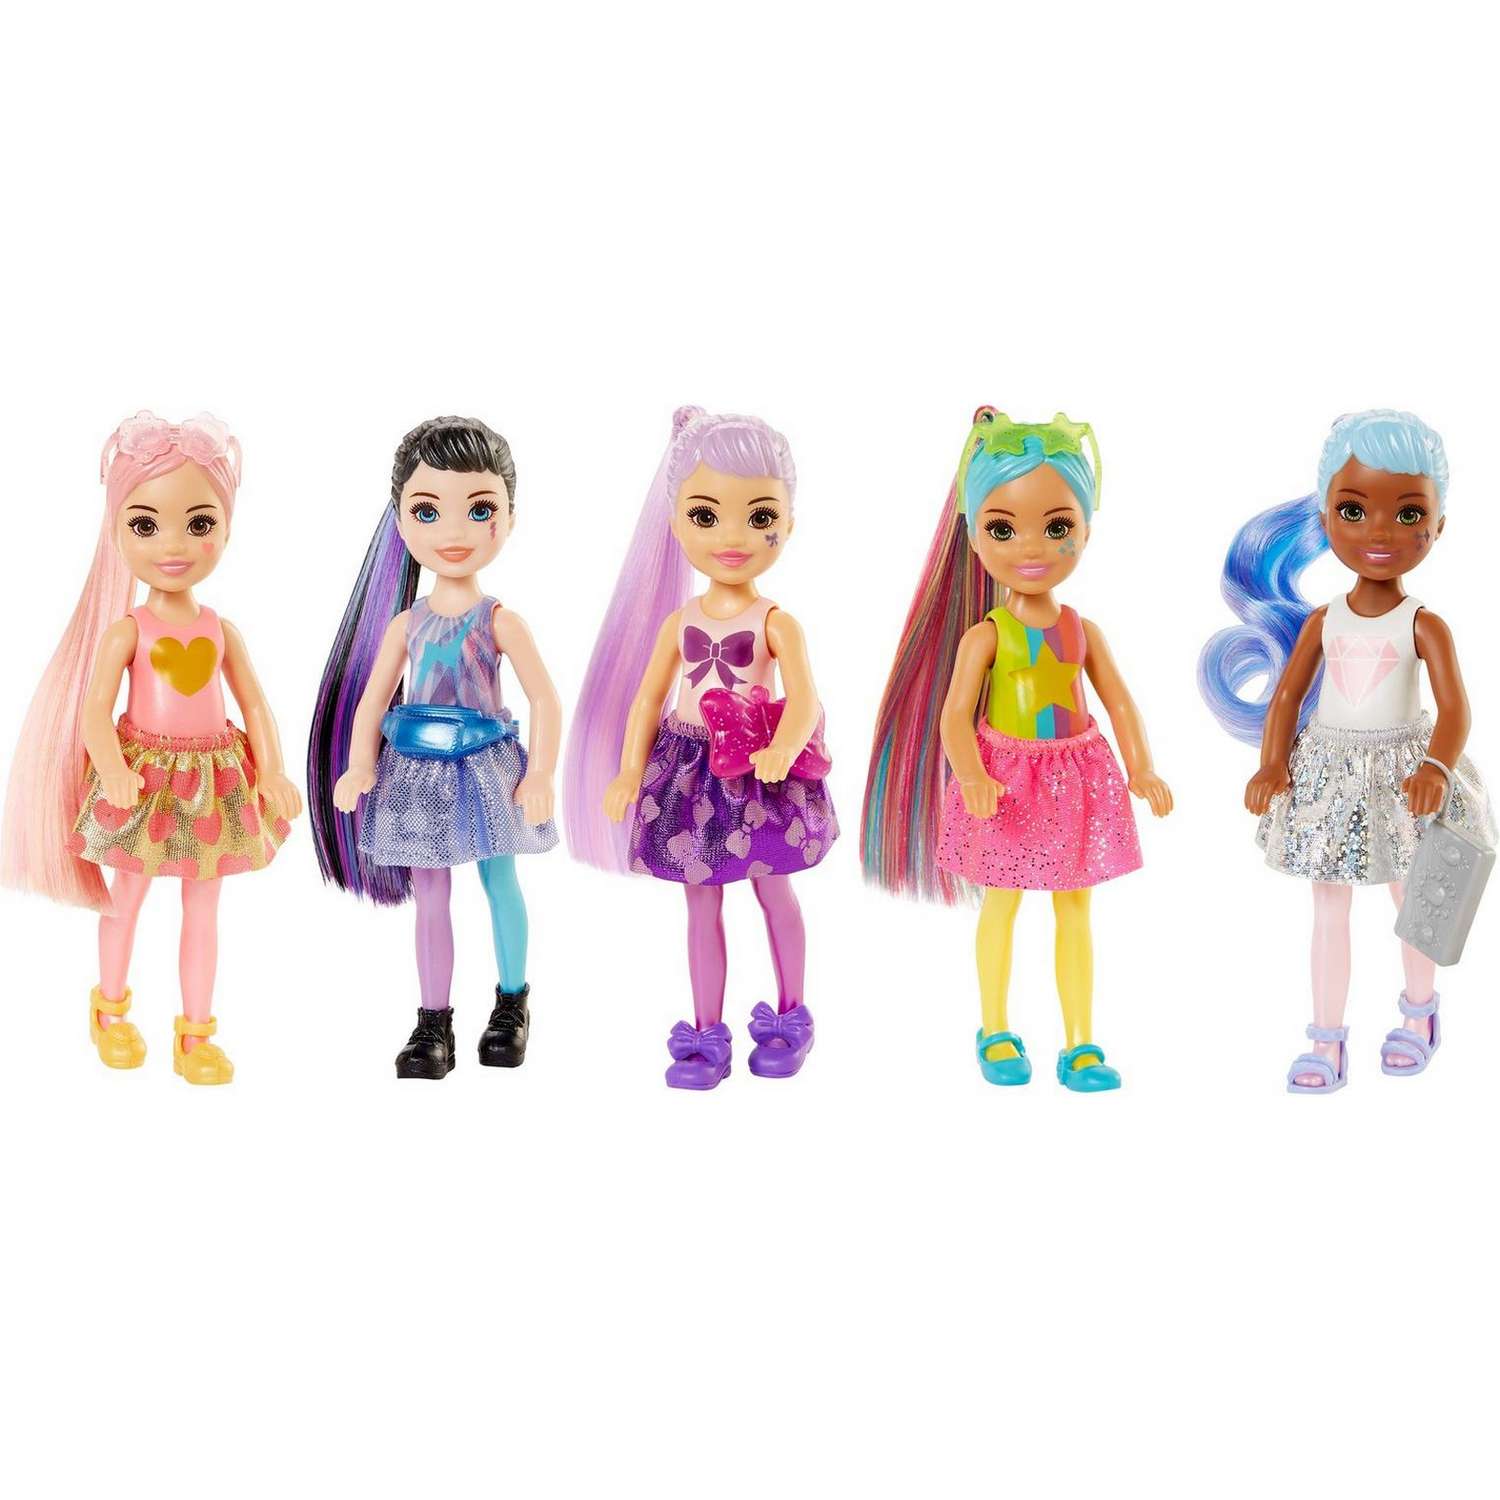 Набор Barbie Челси В1 кукла +аксессуары в непрозрачной упаковке (Сюрприз) GWC59 GTT23 - фото 12